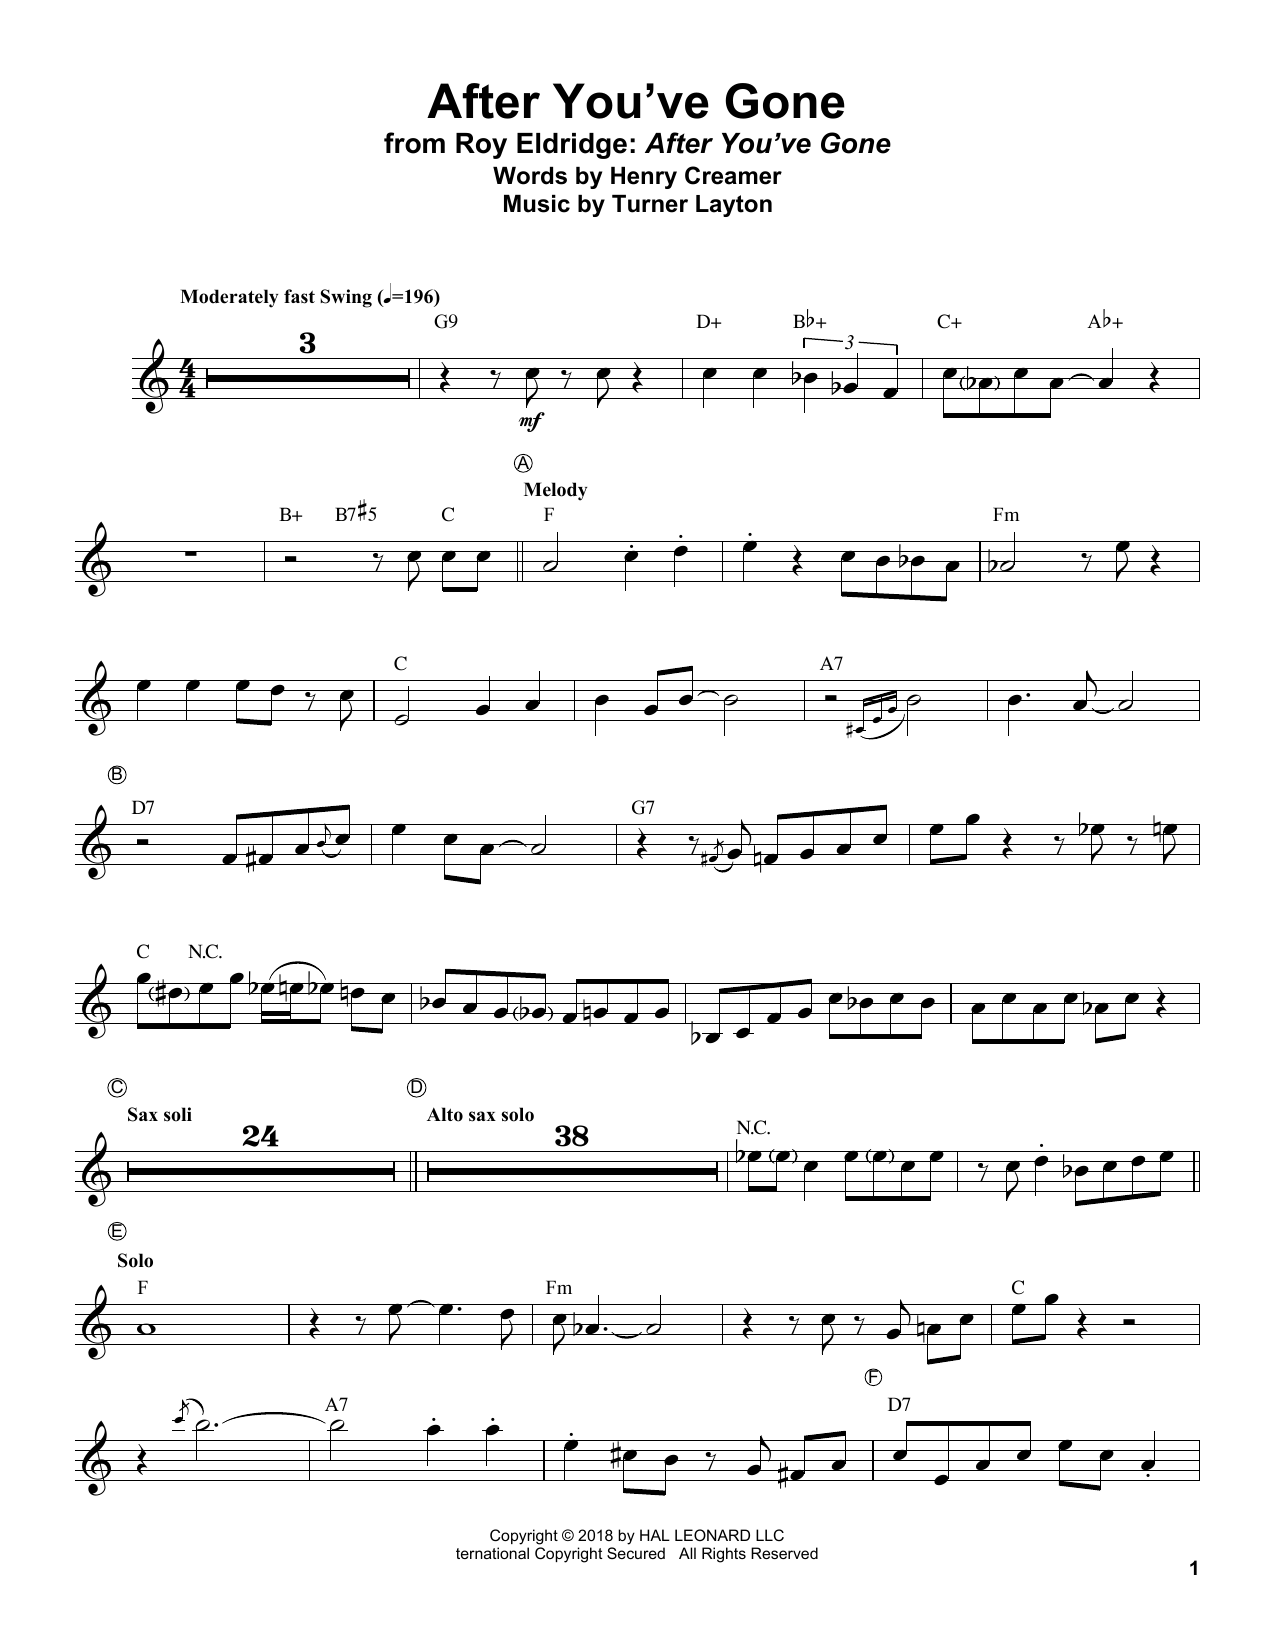 Roy Eldridge After You've Gone Sheet Music Notes & Chords for Trumpet Transcription - Download or Print PDF